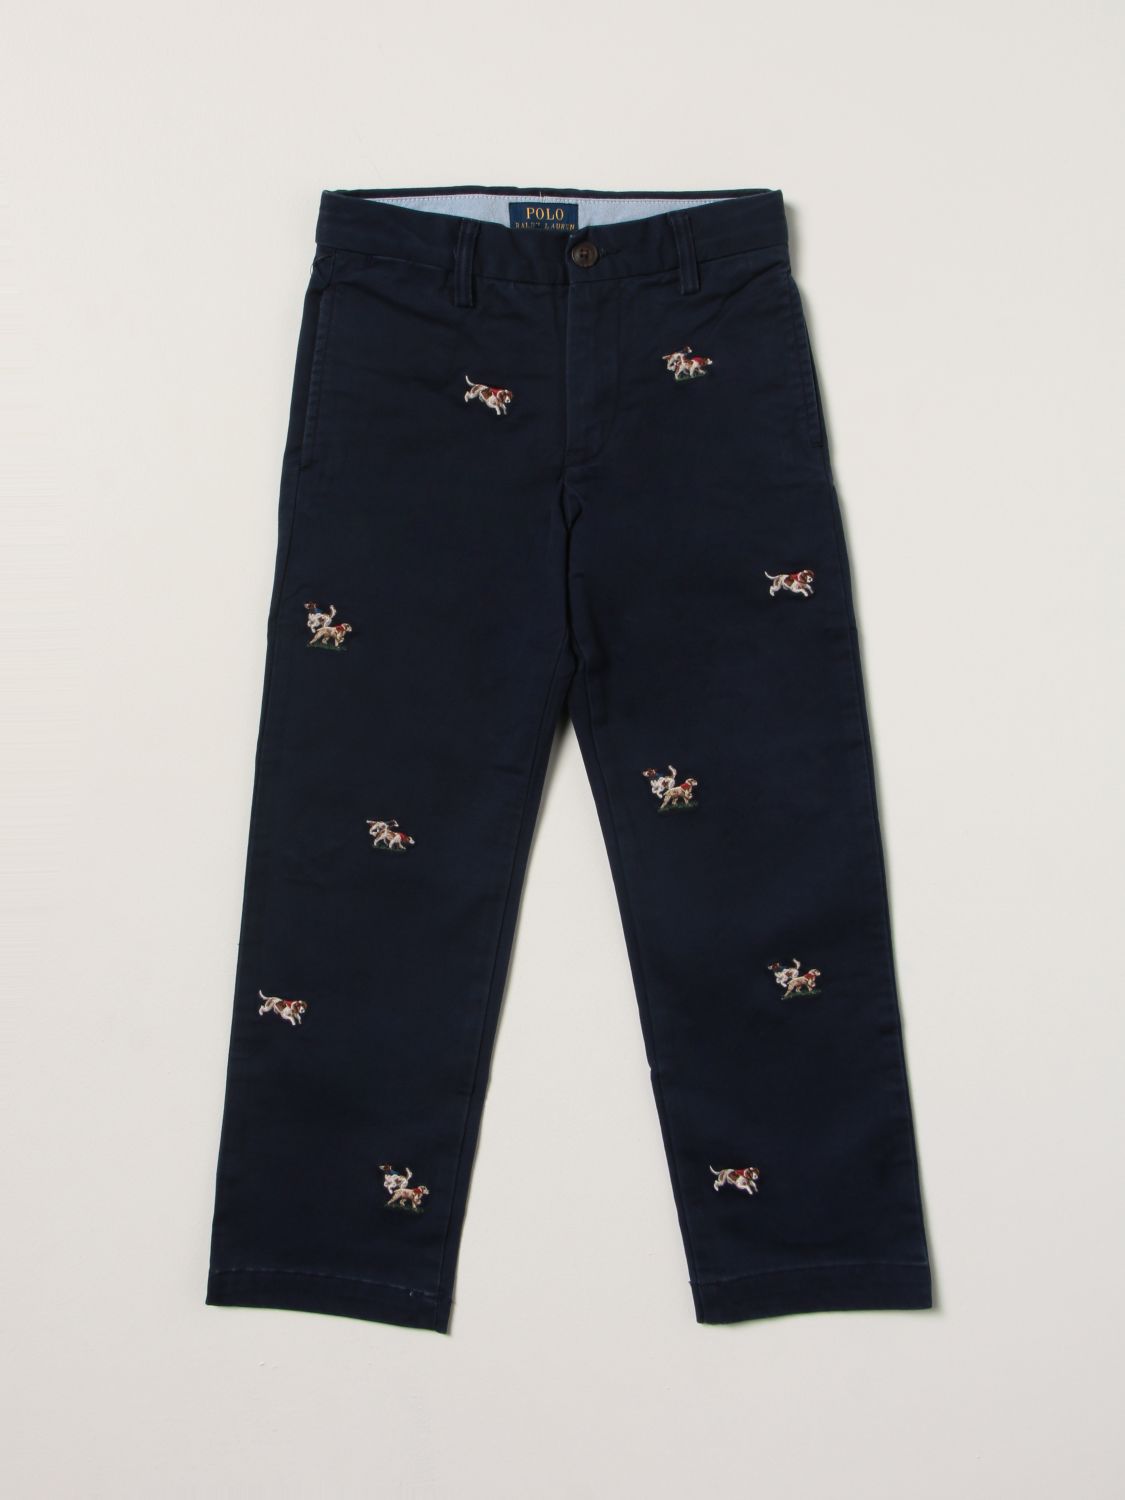 Susteen ръководител обкръжен POLO RALPH LAUREN: pants with all over embroidery - Blue | Polo Ralph Lauren  pants 322851597 online on GIGLIO.COM